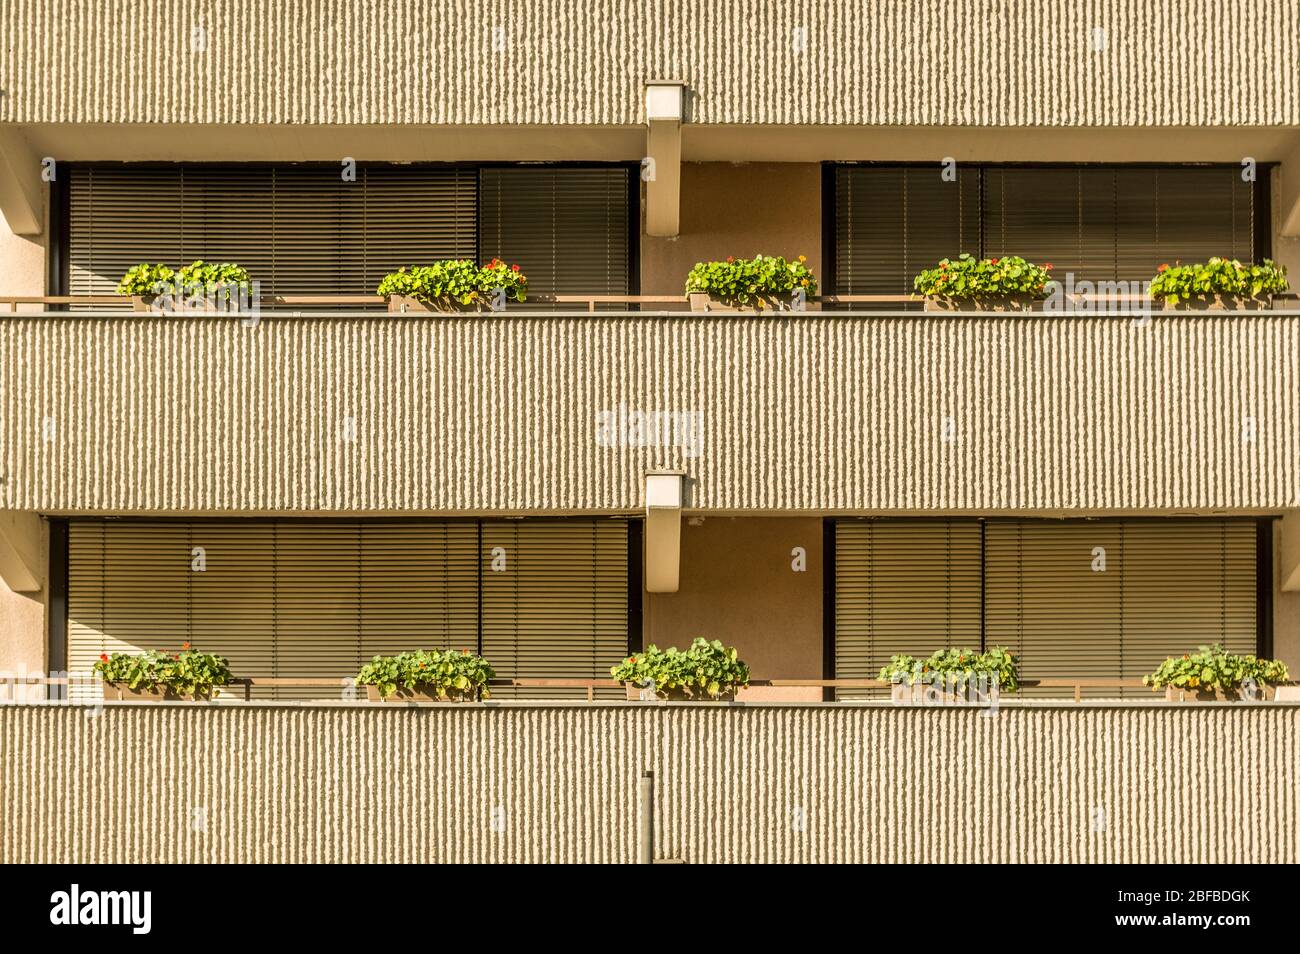 Façade maison résidentielle avec balcons grandes fenêtres et stores solaires arrangements de fleurs Banque D'Images